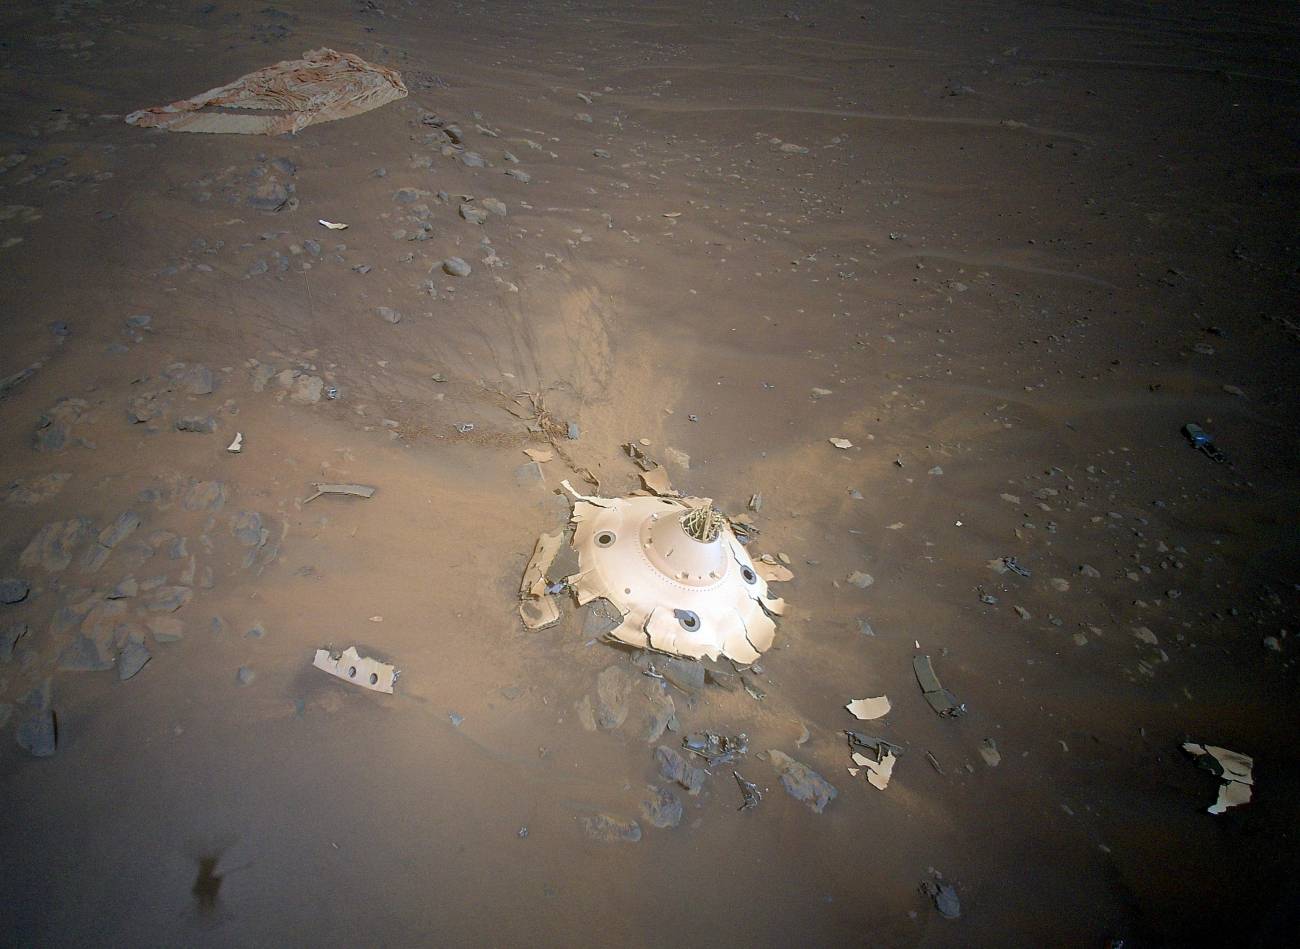 El helicóptero Ingenuity fotografía el ‘tren de aterrizaje’ de Perseverance en Marte